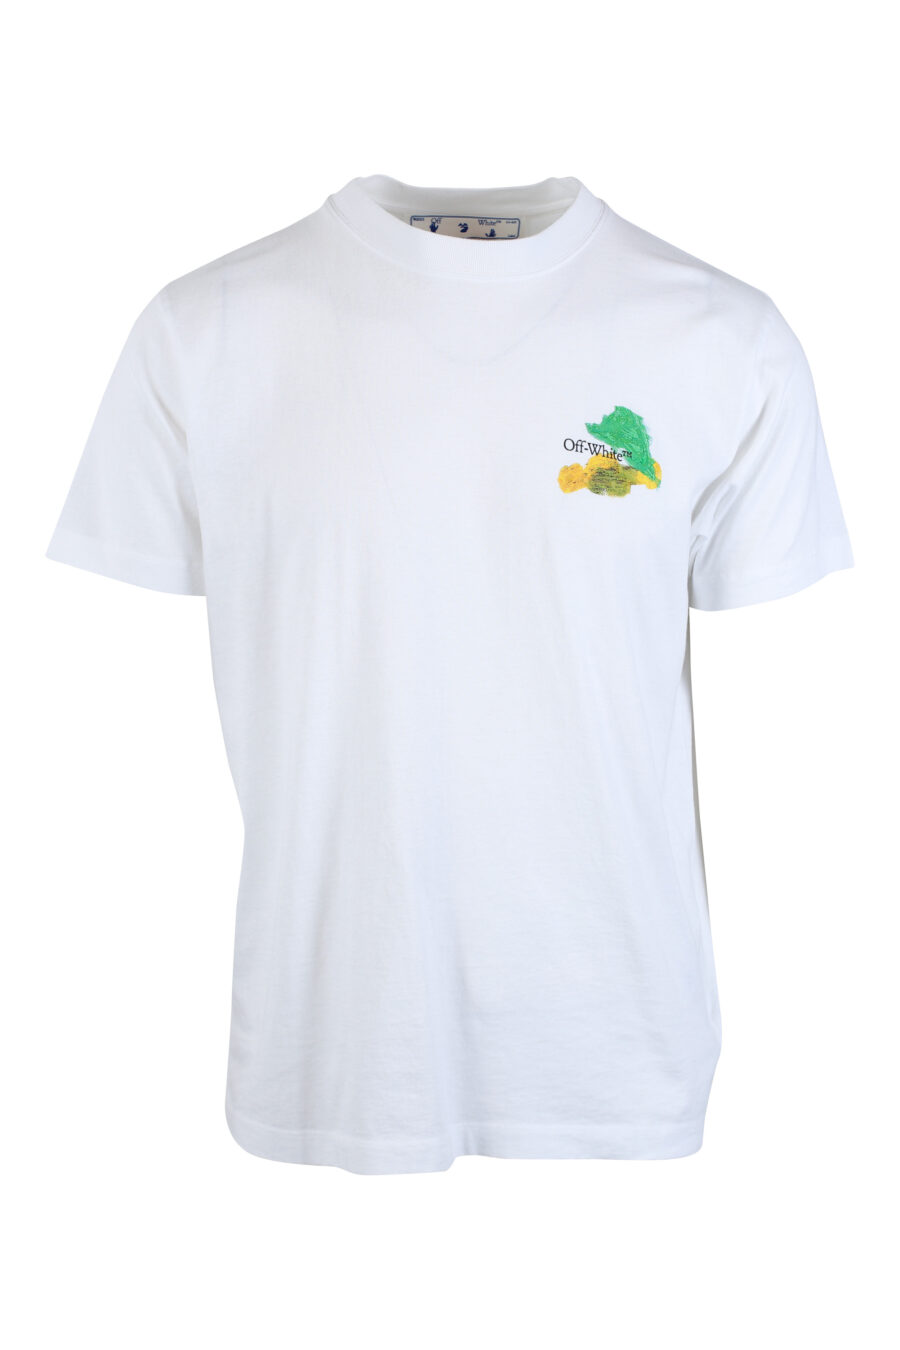 T-shirt blanc avec maxilogo "arrow" multicolore dans le dos - IMG 2620